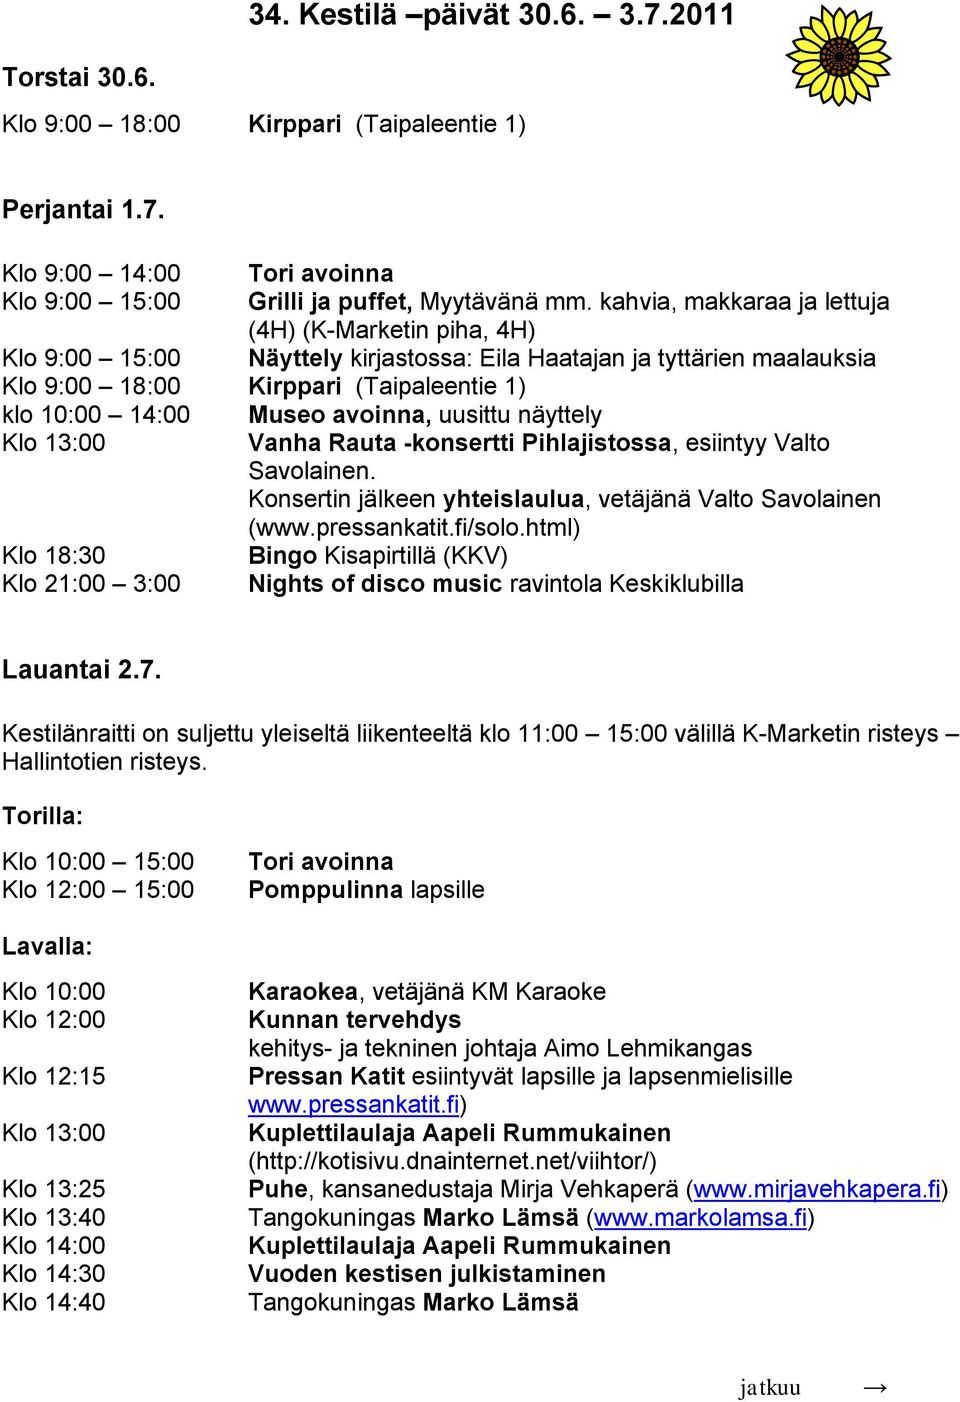 avoinna, uusittu näyttely Klo 13:00 Vanha Rauta -konsertti Pihlajistossa, esiintyy Valto Savolainen. Konsertin jälkeen yhteislaulua, vetäjänä Valto Savolainen (www.pressankatit.fi/solo.